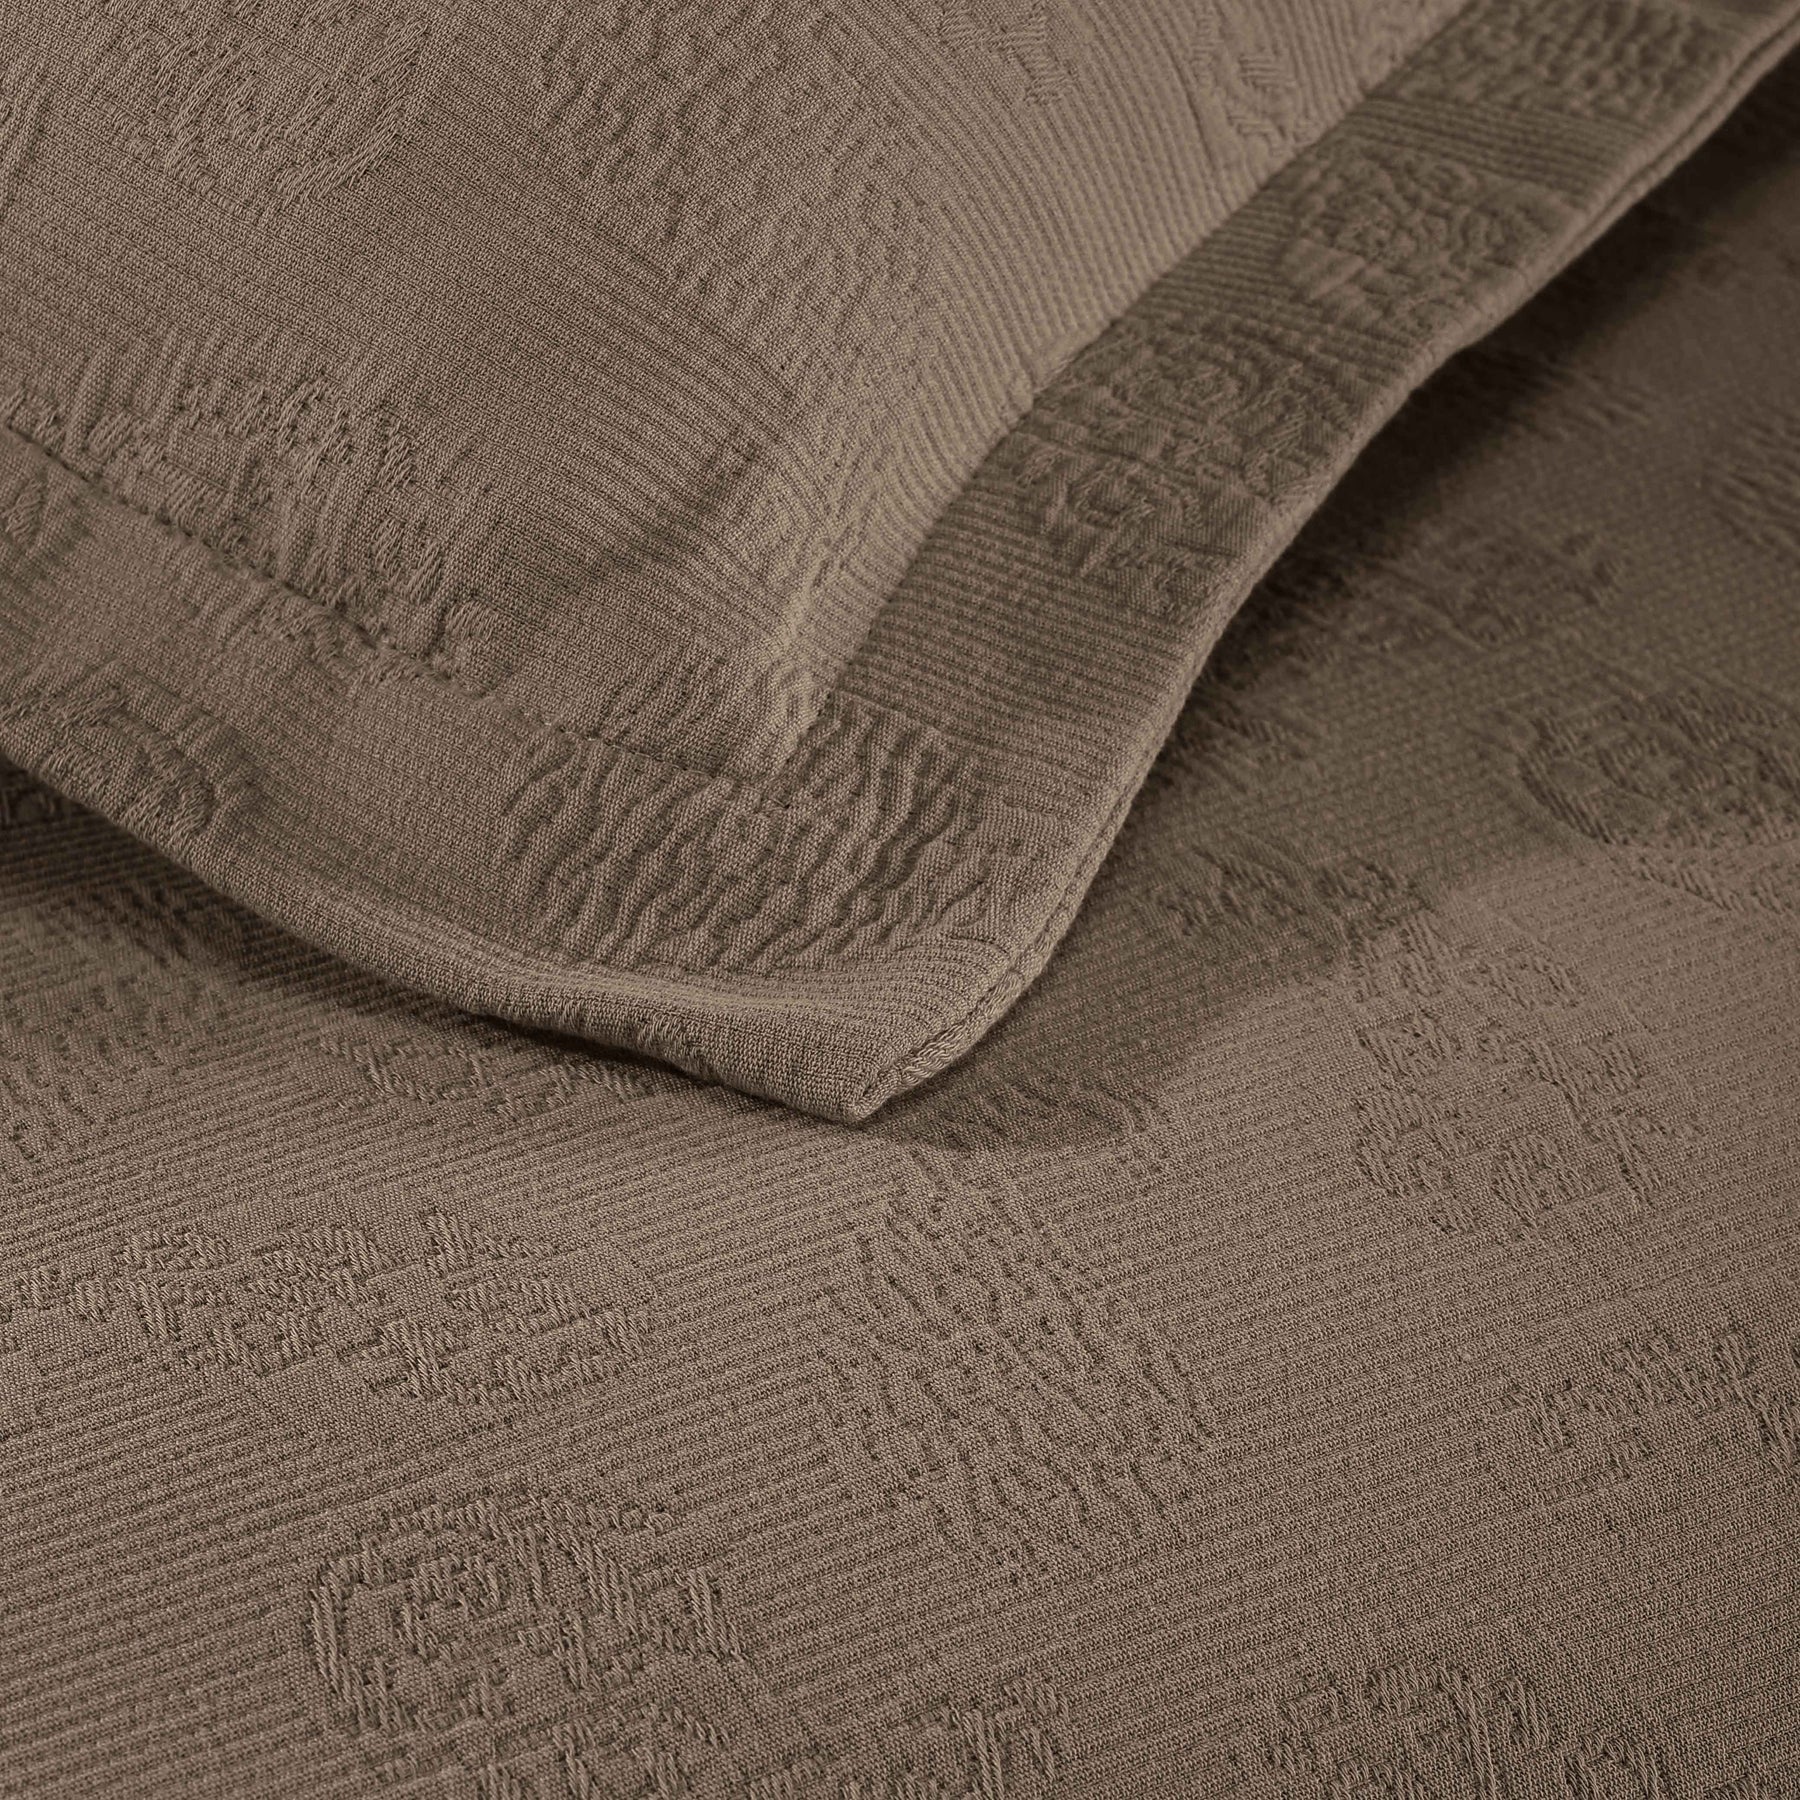 Jacquard Matelassé Paisley Cotton Bedspread Set - Taupe